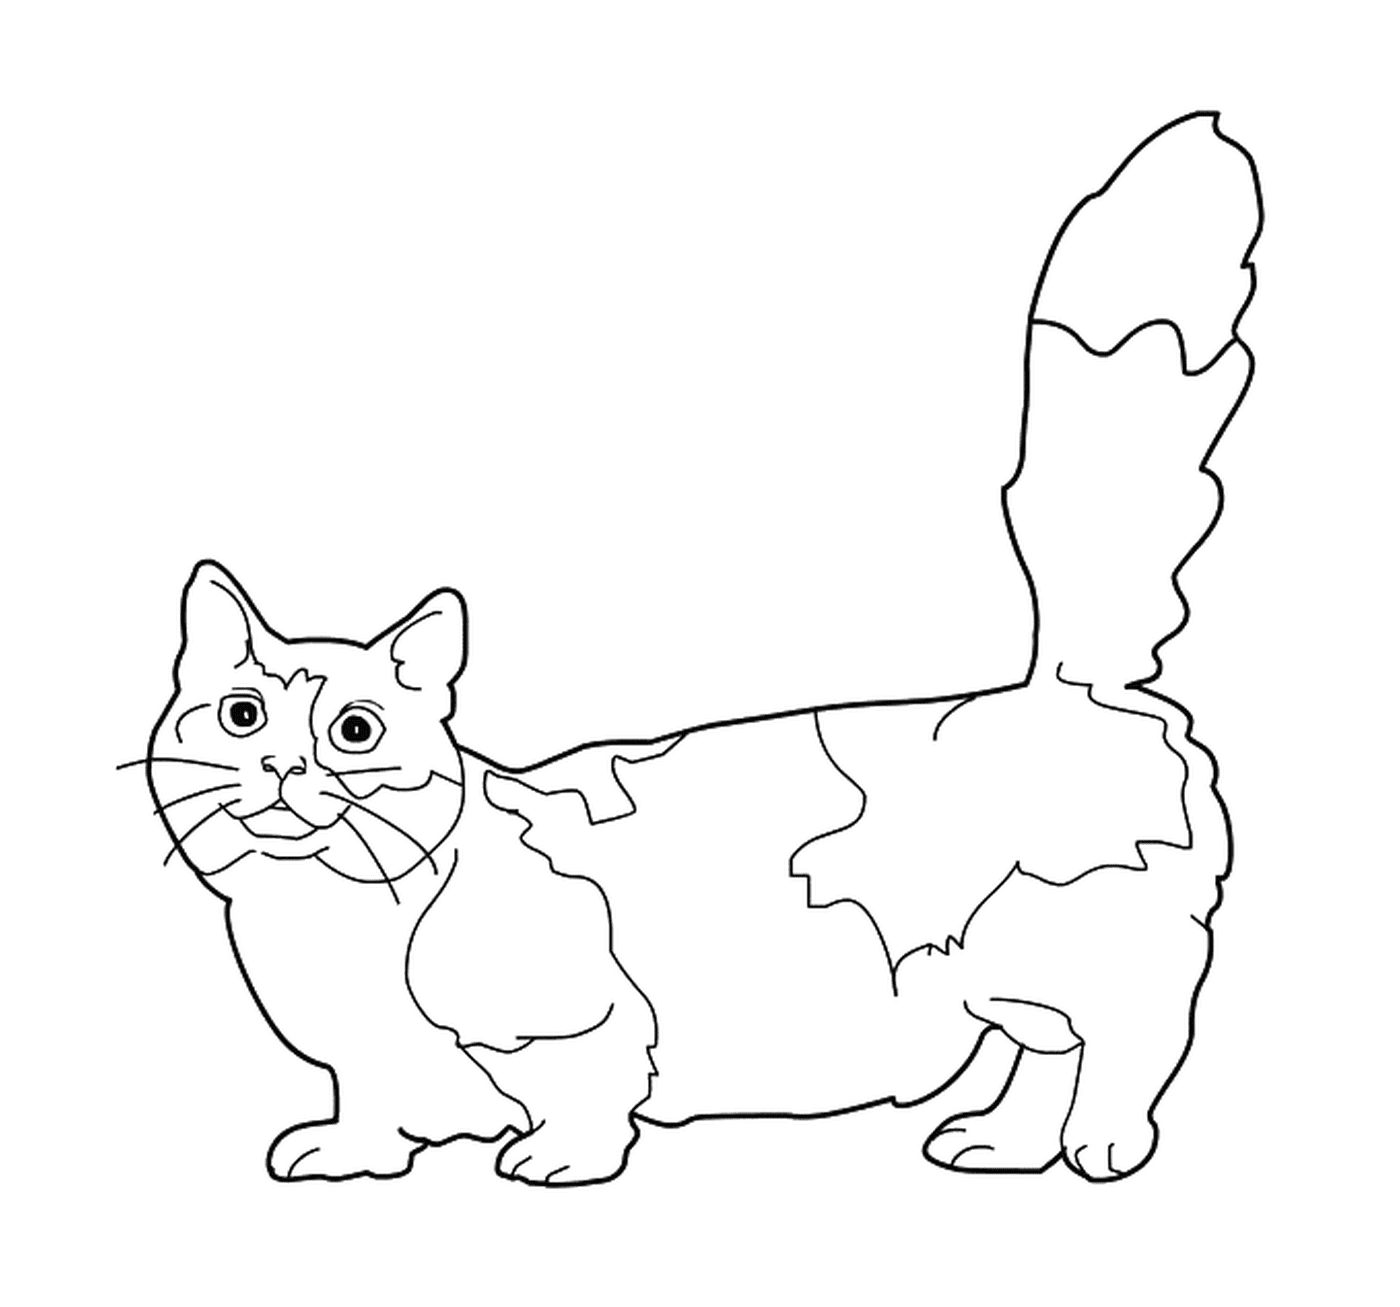  Ein Munchkin, eine Katze mit kurzen Beinen 